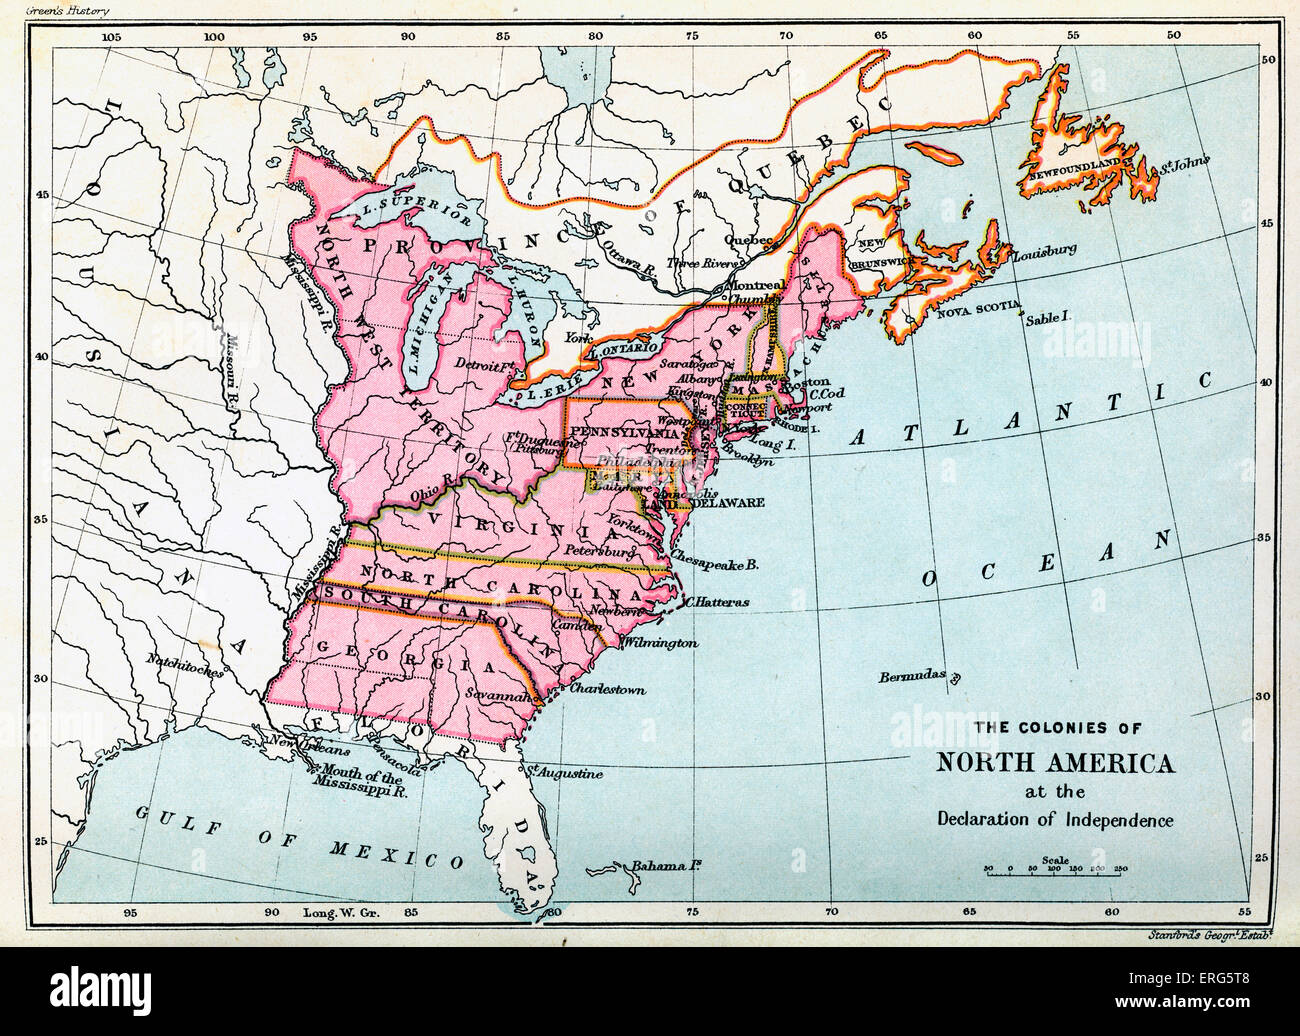 Kolonien von Nordamerika 1776 in der Unabhängigkeitserklärung der Vereinigten Staaten. Von den kontinentalen verabschiedeten Erklärung Stockfoto